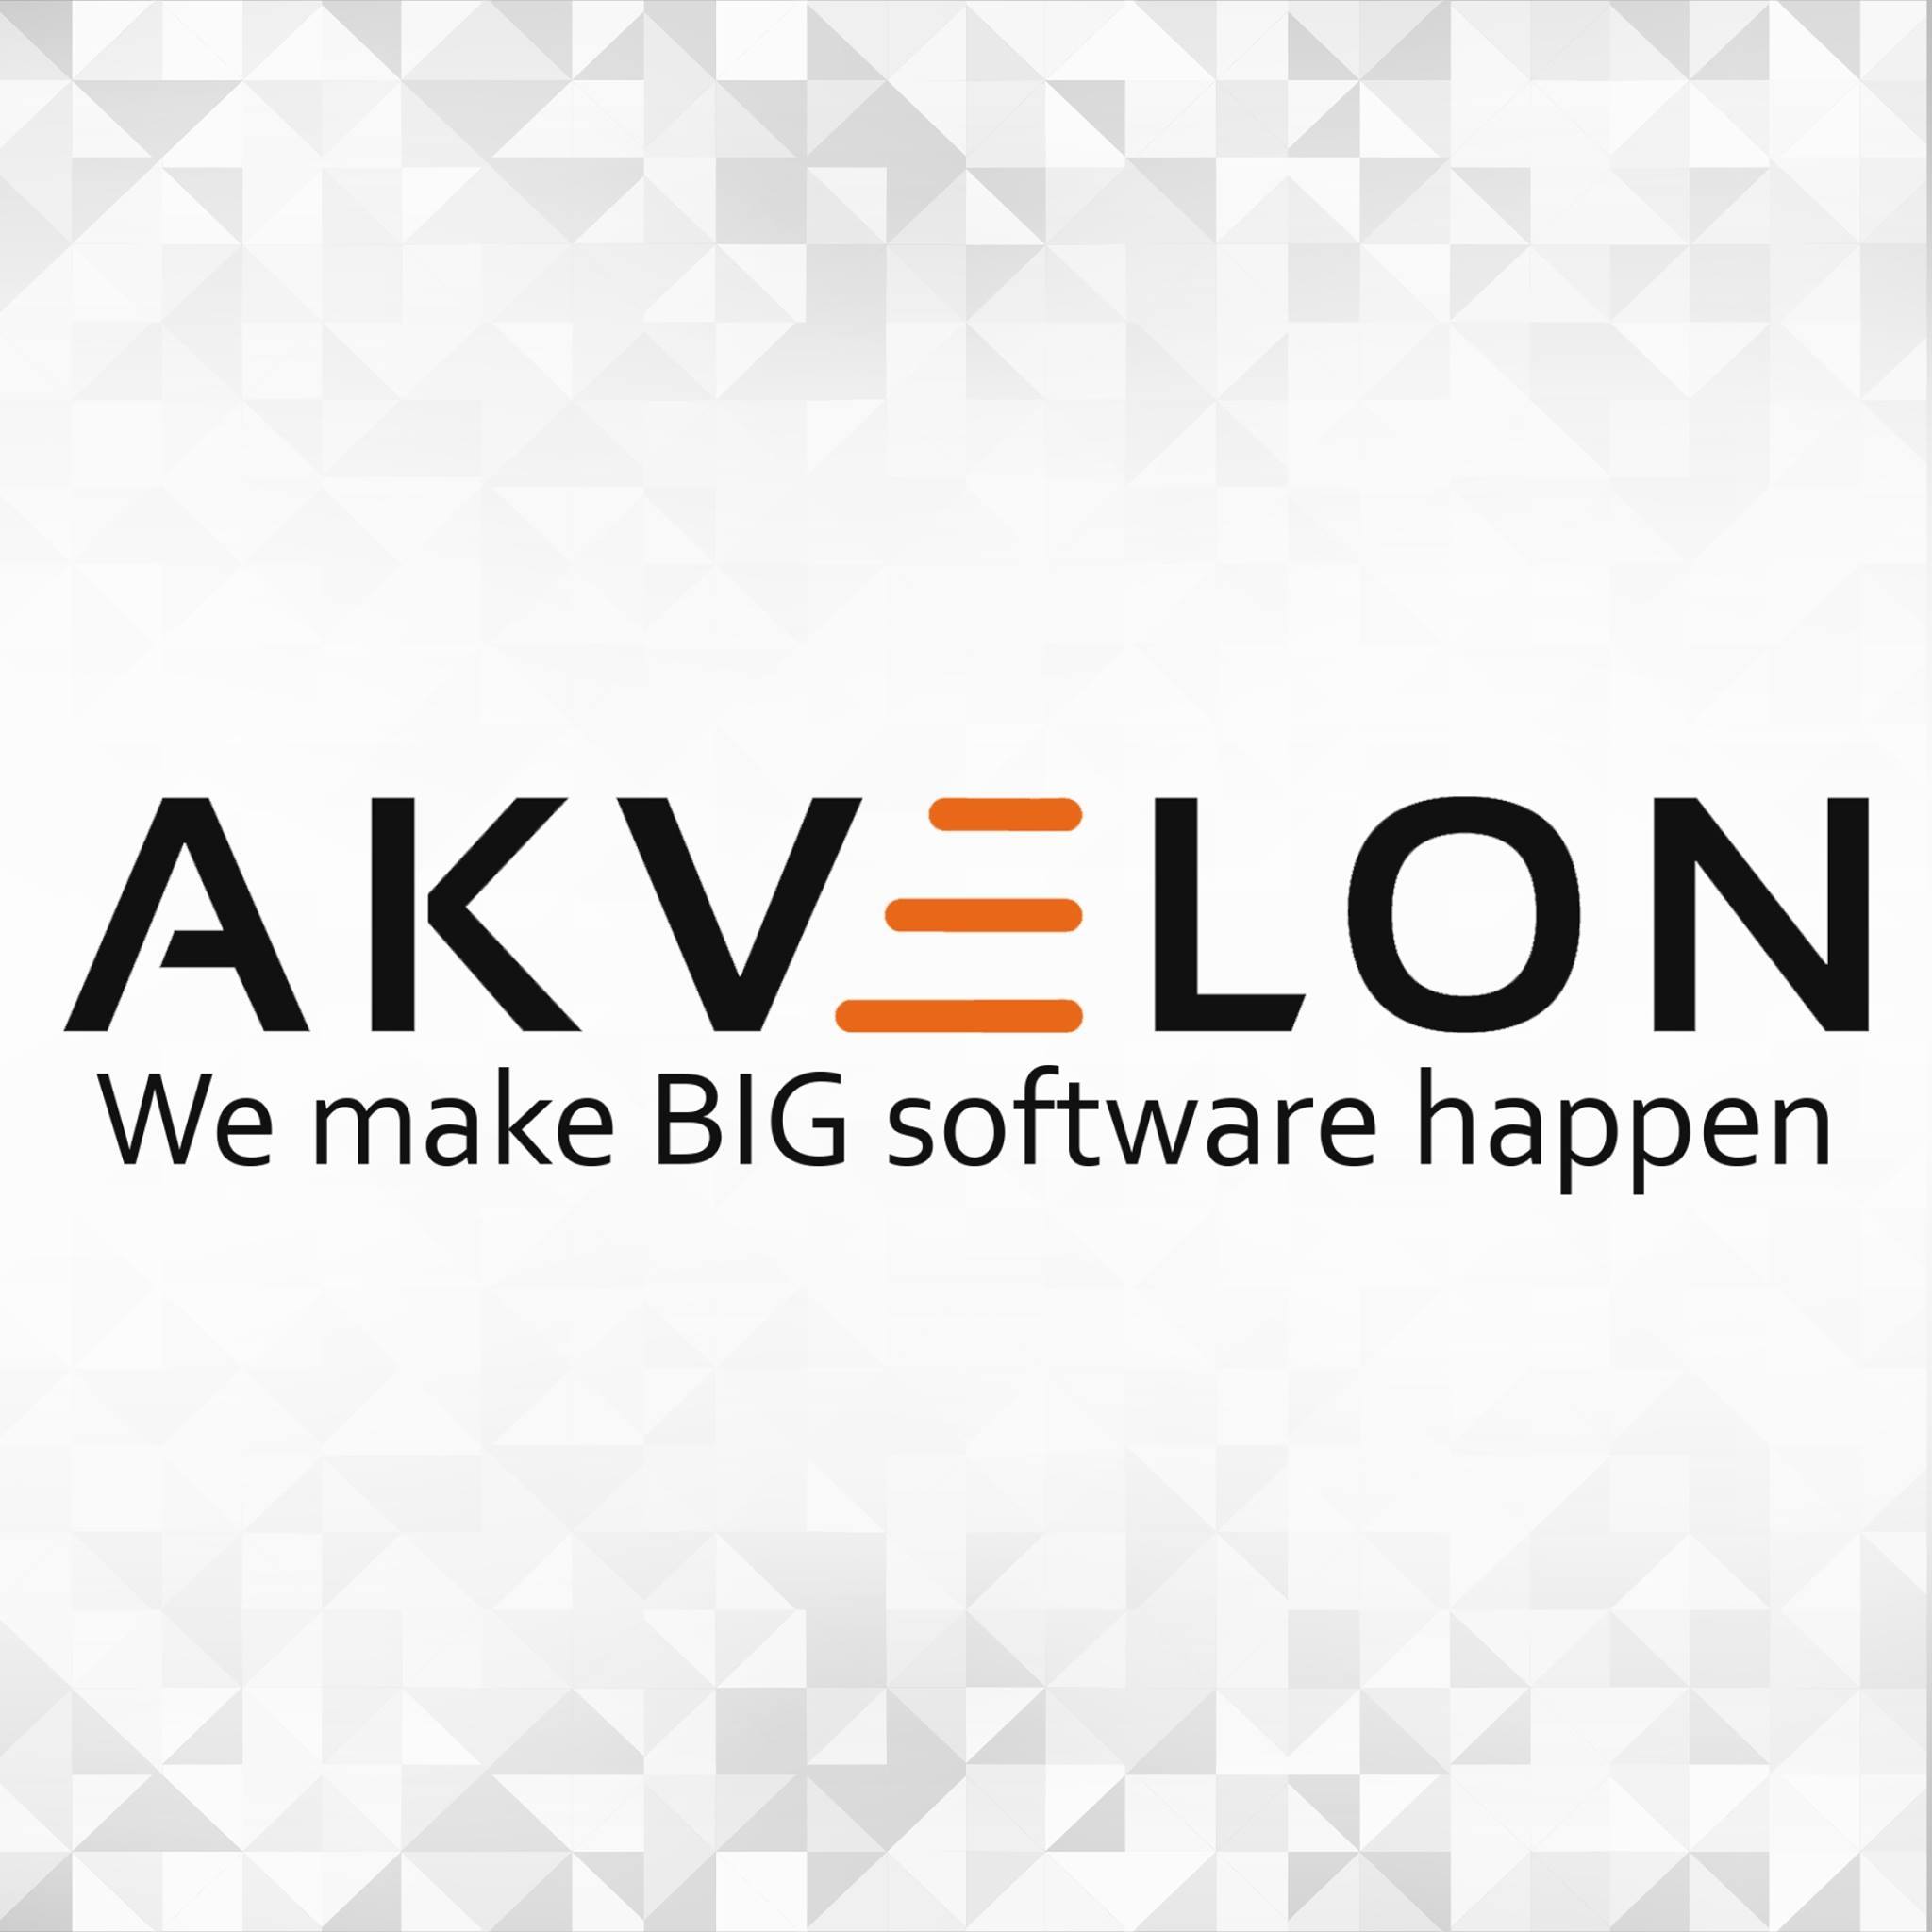 Akvelon ՏՏ ընկերությունը նոր գրասենյակ է բացում Երևանում